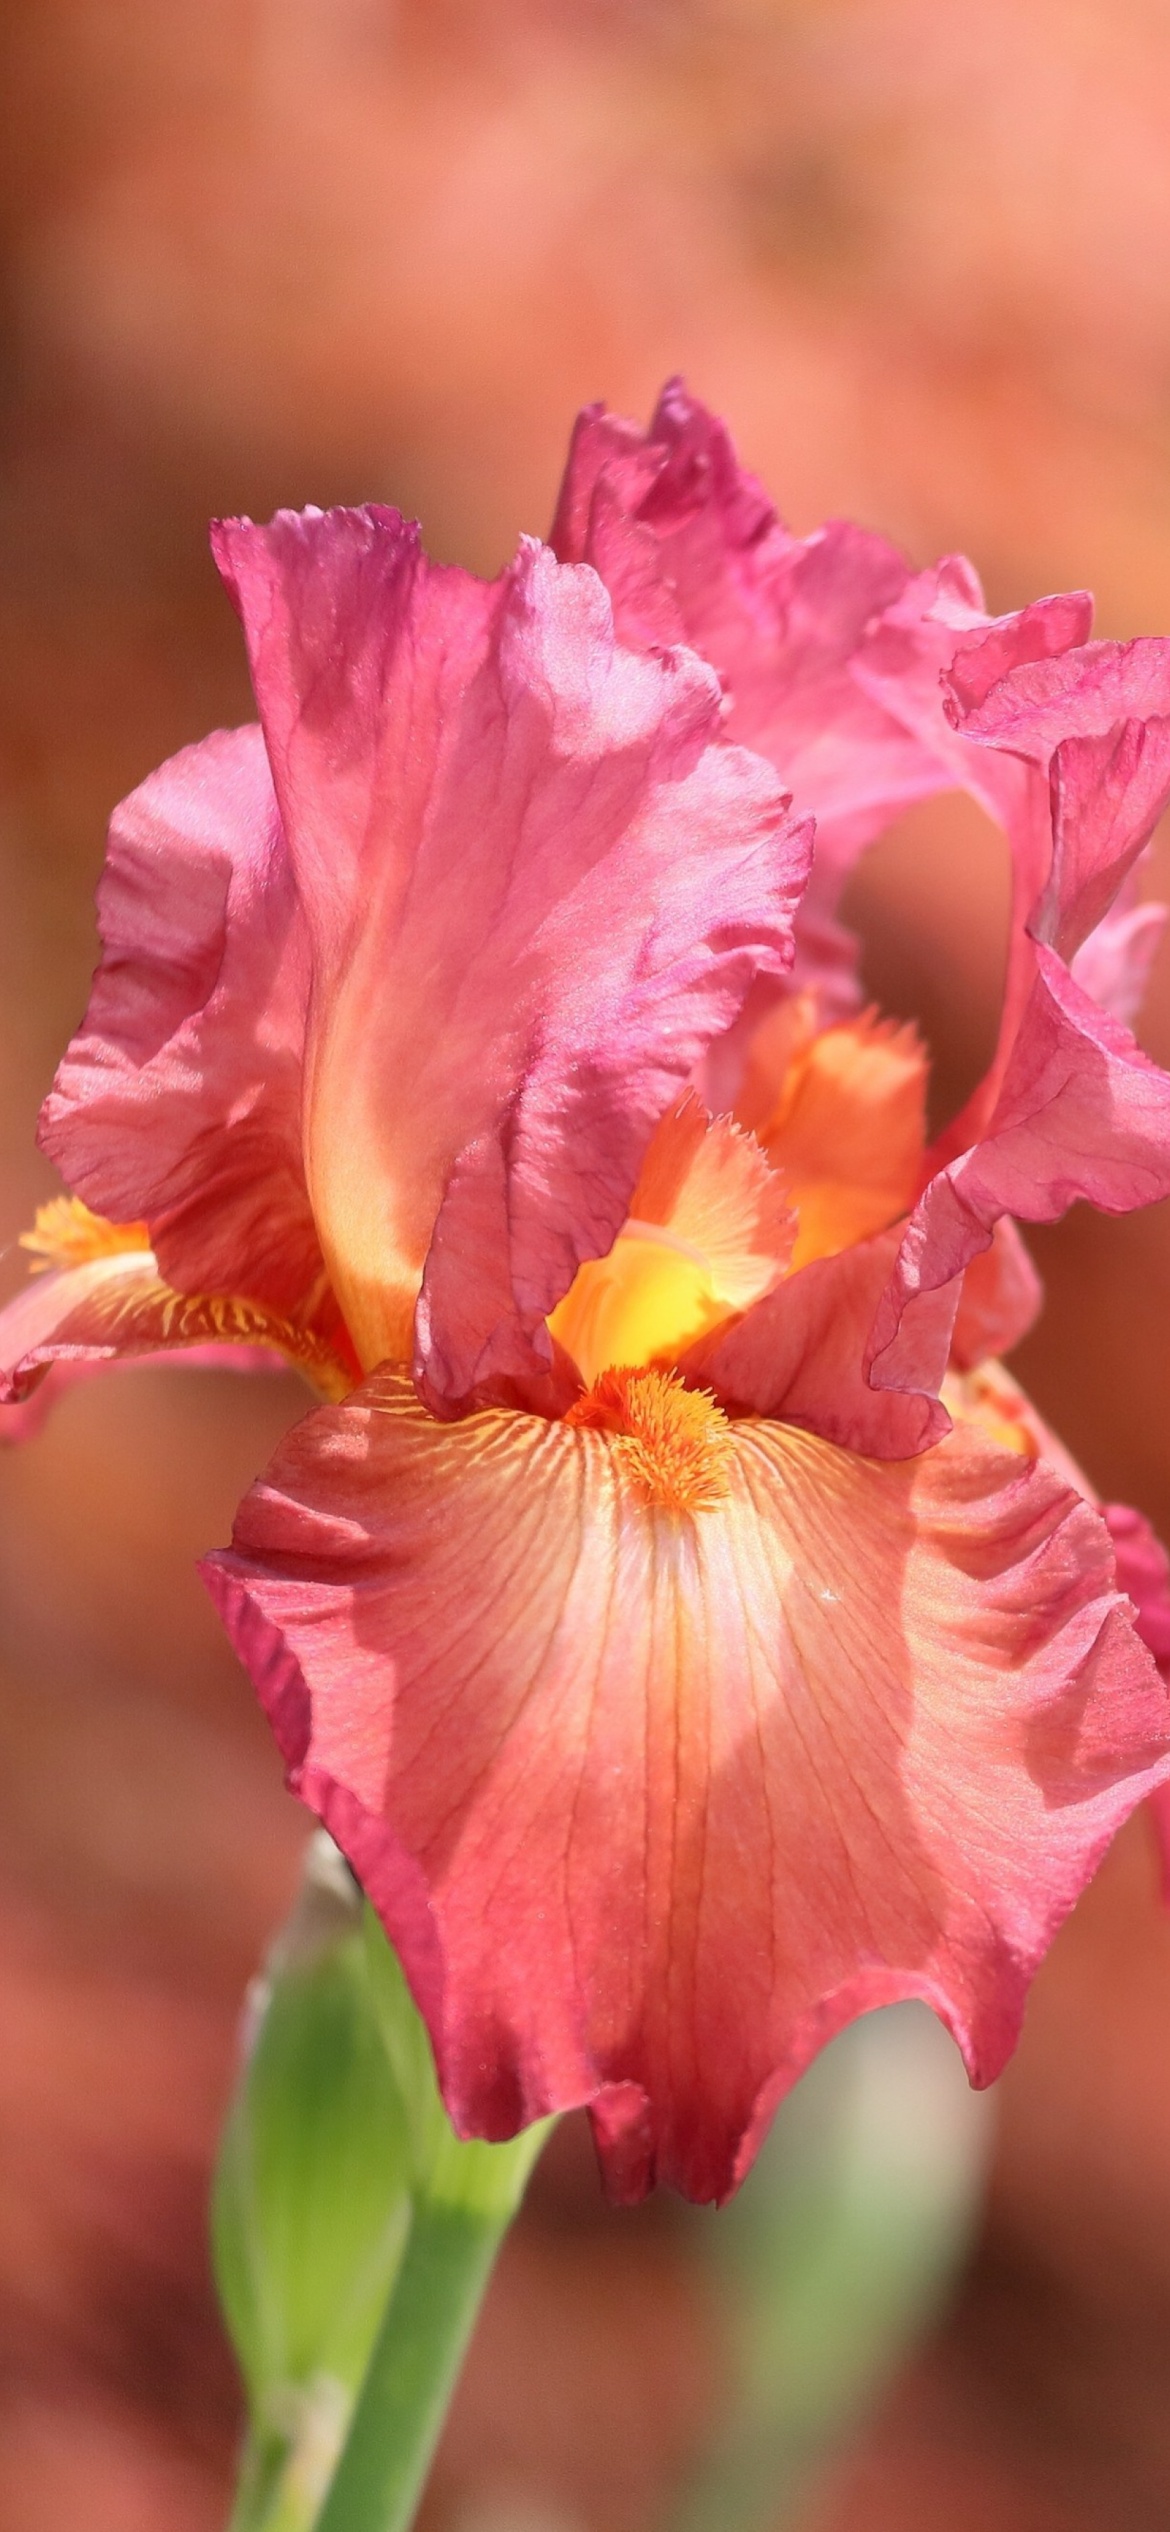 Обои Macro Pink Irises 1170x2532